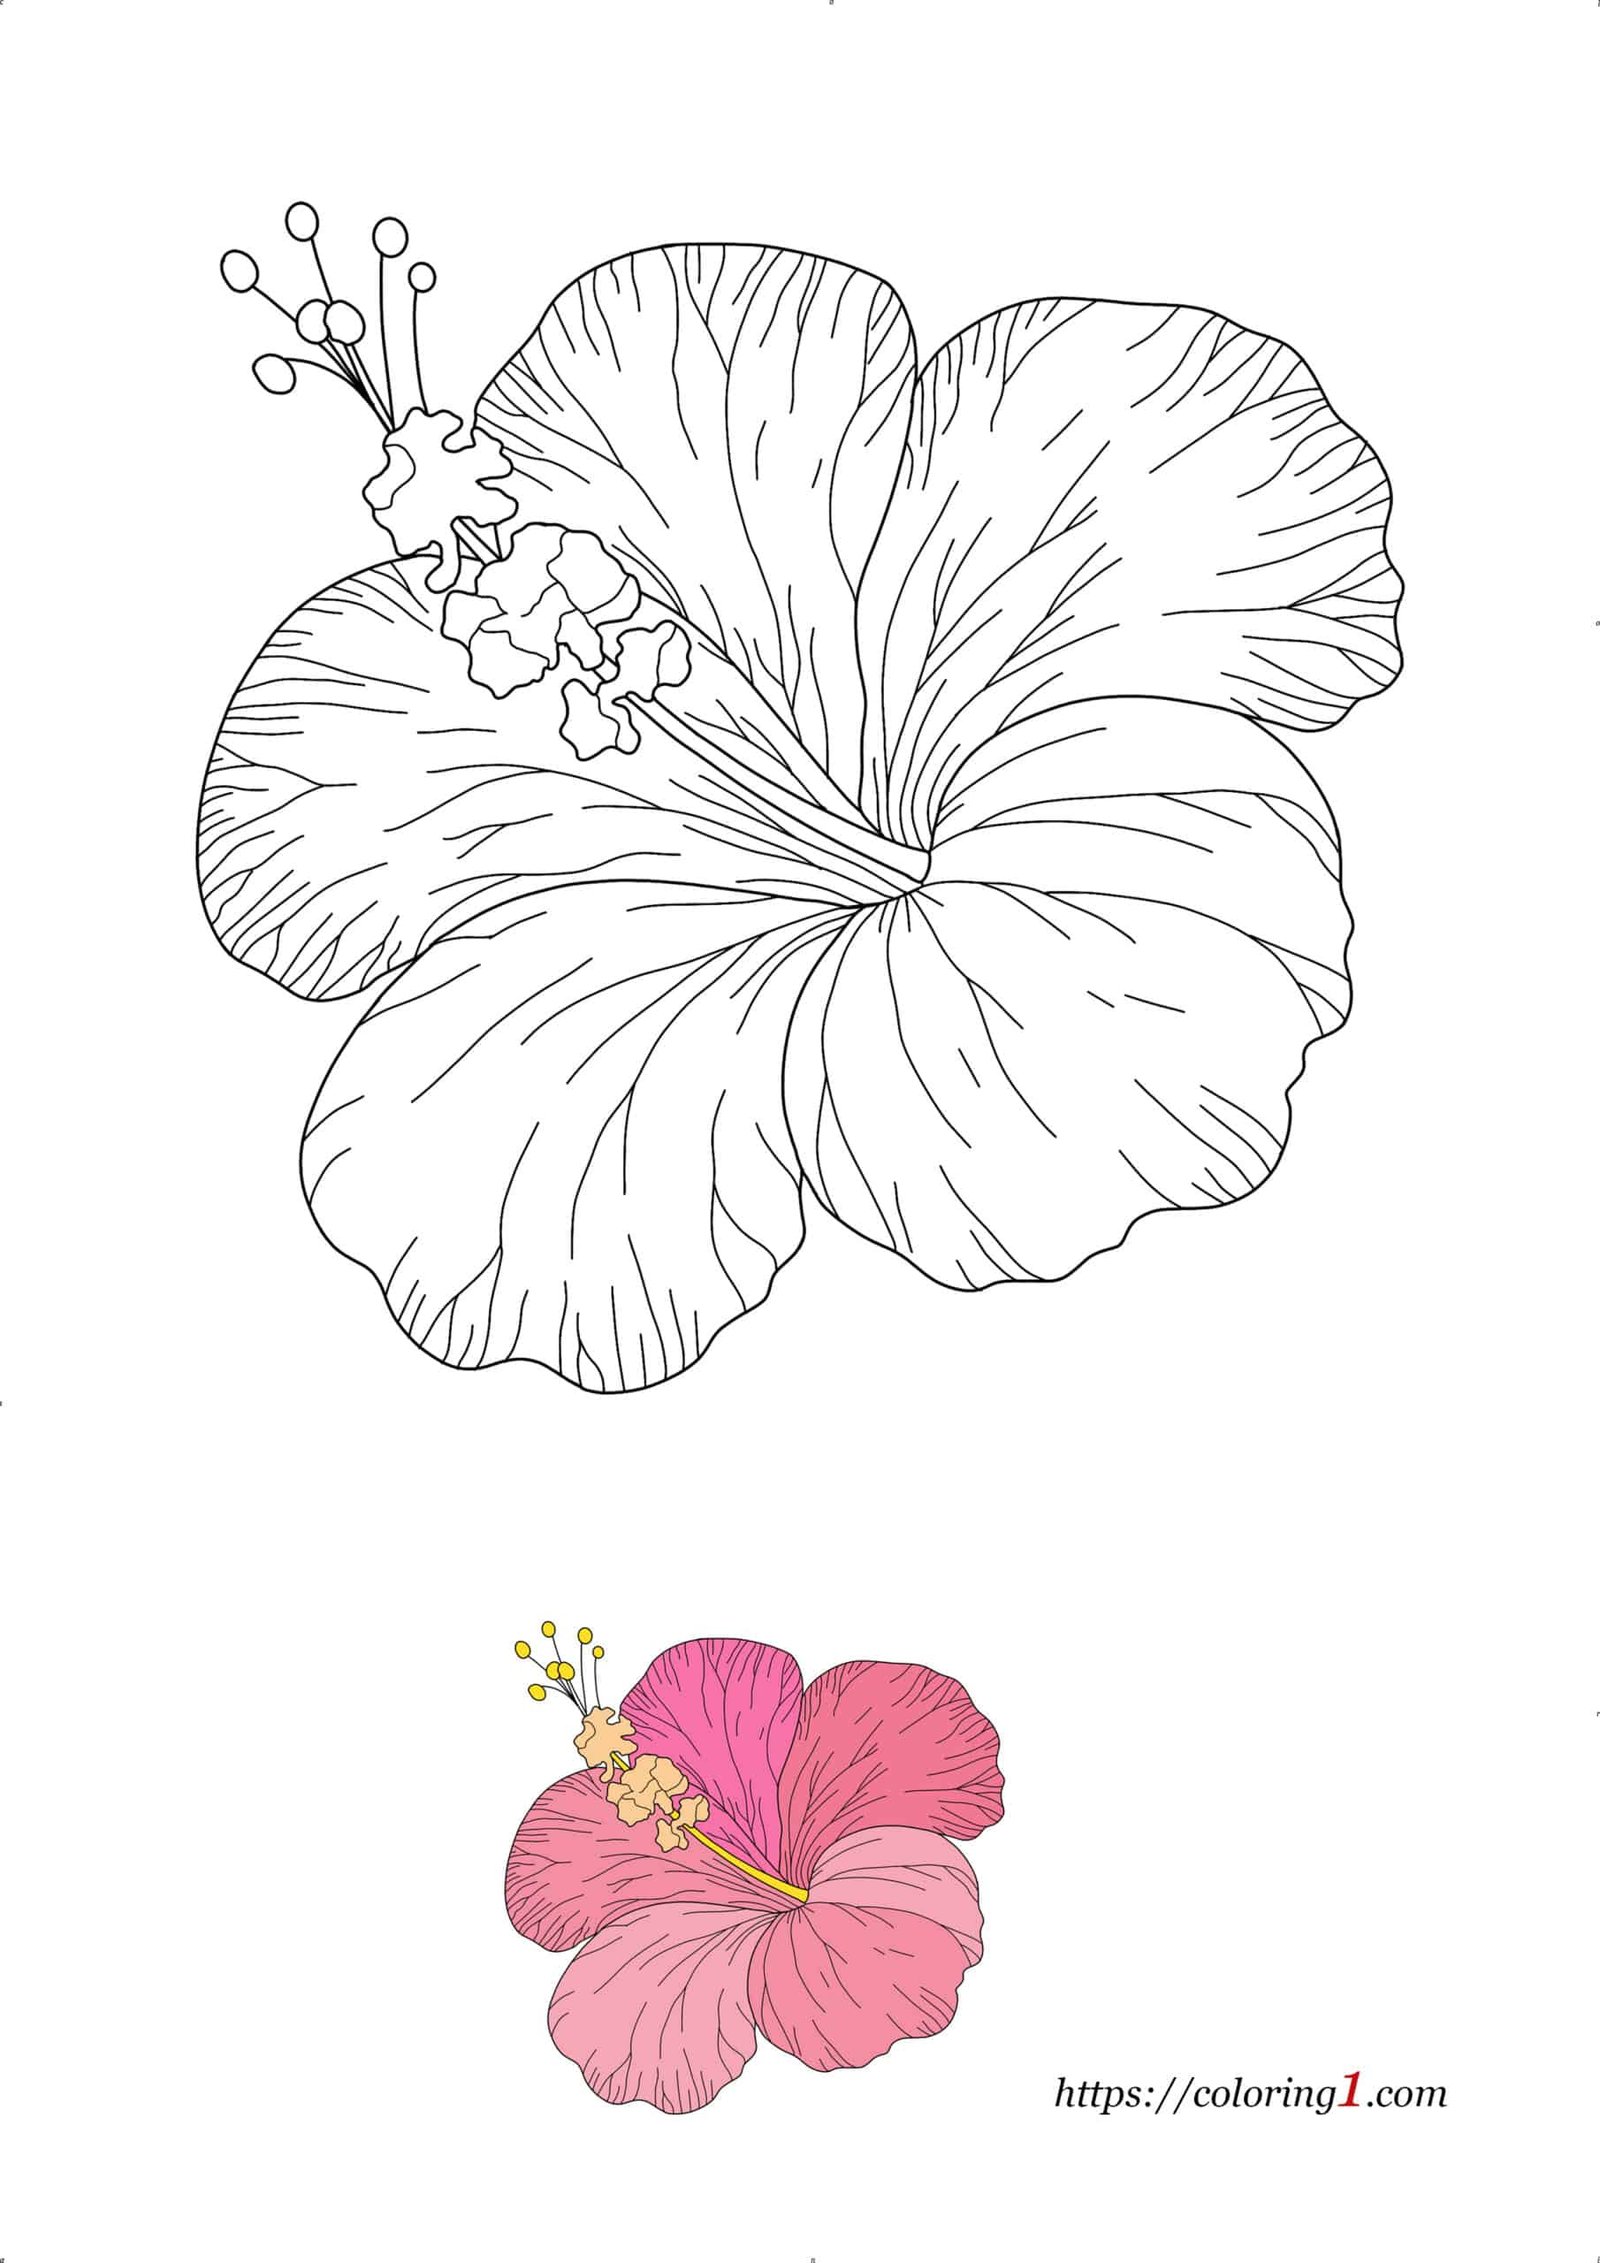 Coloriage Dessin Fleur Hawaienne à imprimer gratuit